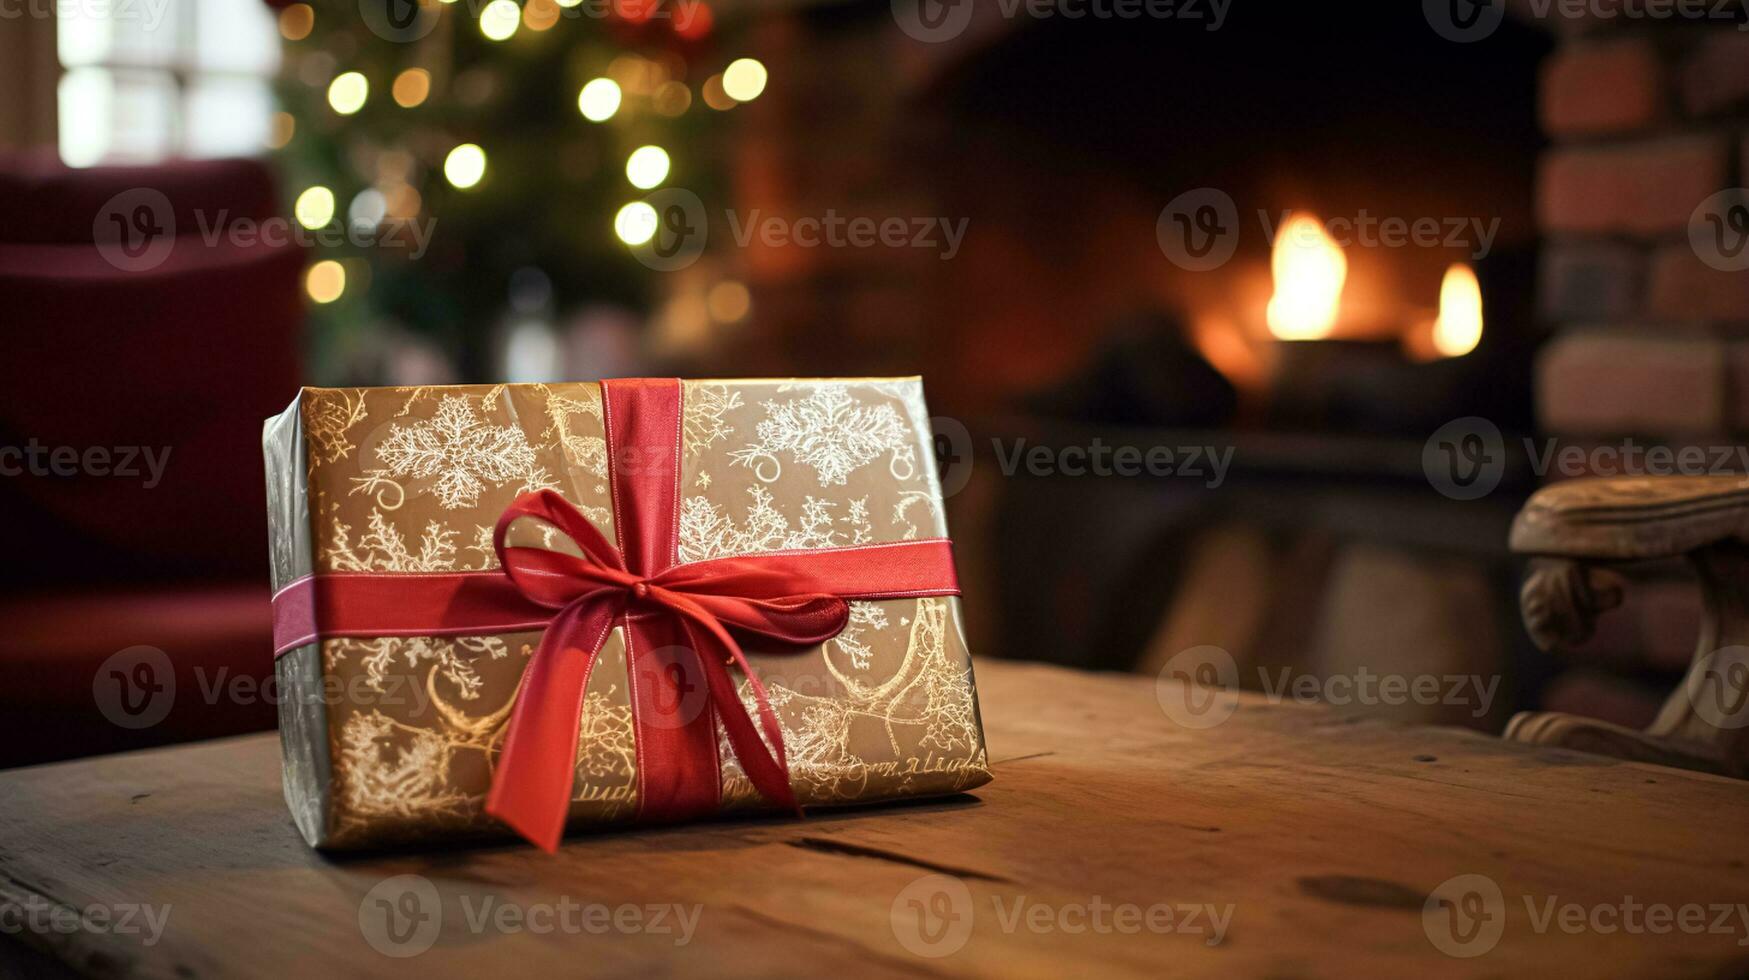 ai gegenereerd Kerstmis geschenk doos in de buurt knus haard in de Engels land huisje, winter vakantie, boksen dag viering en vakantie boodschappen doen foto